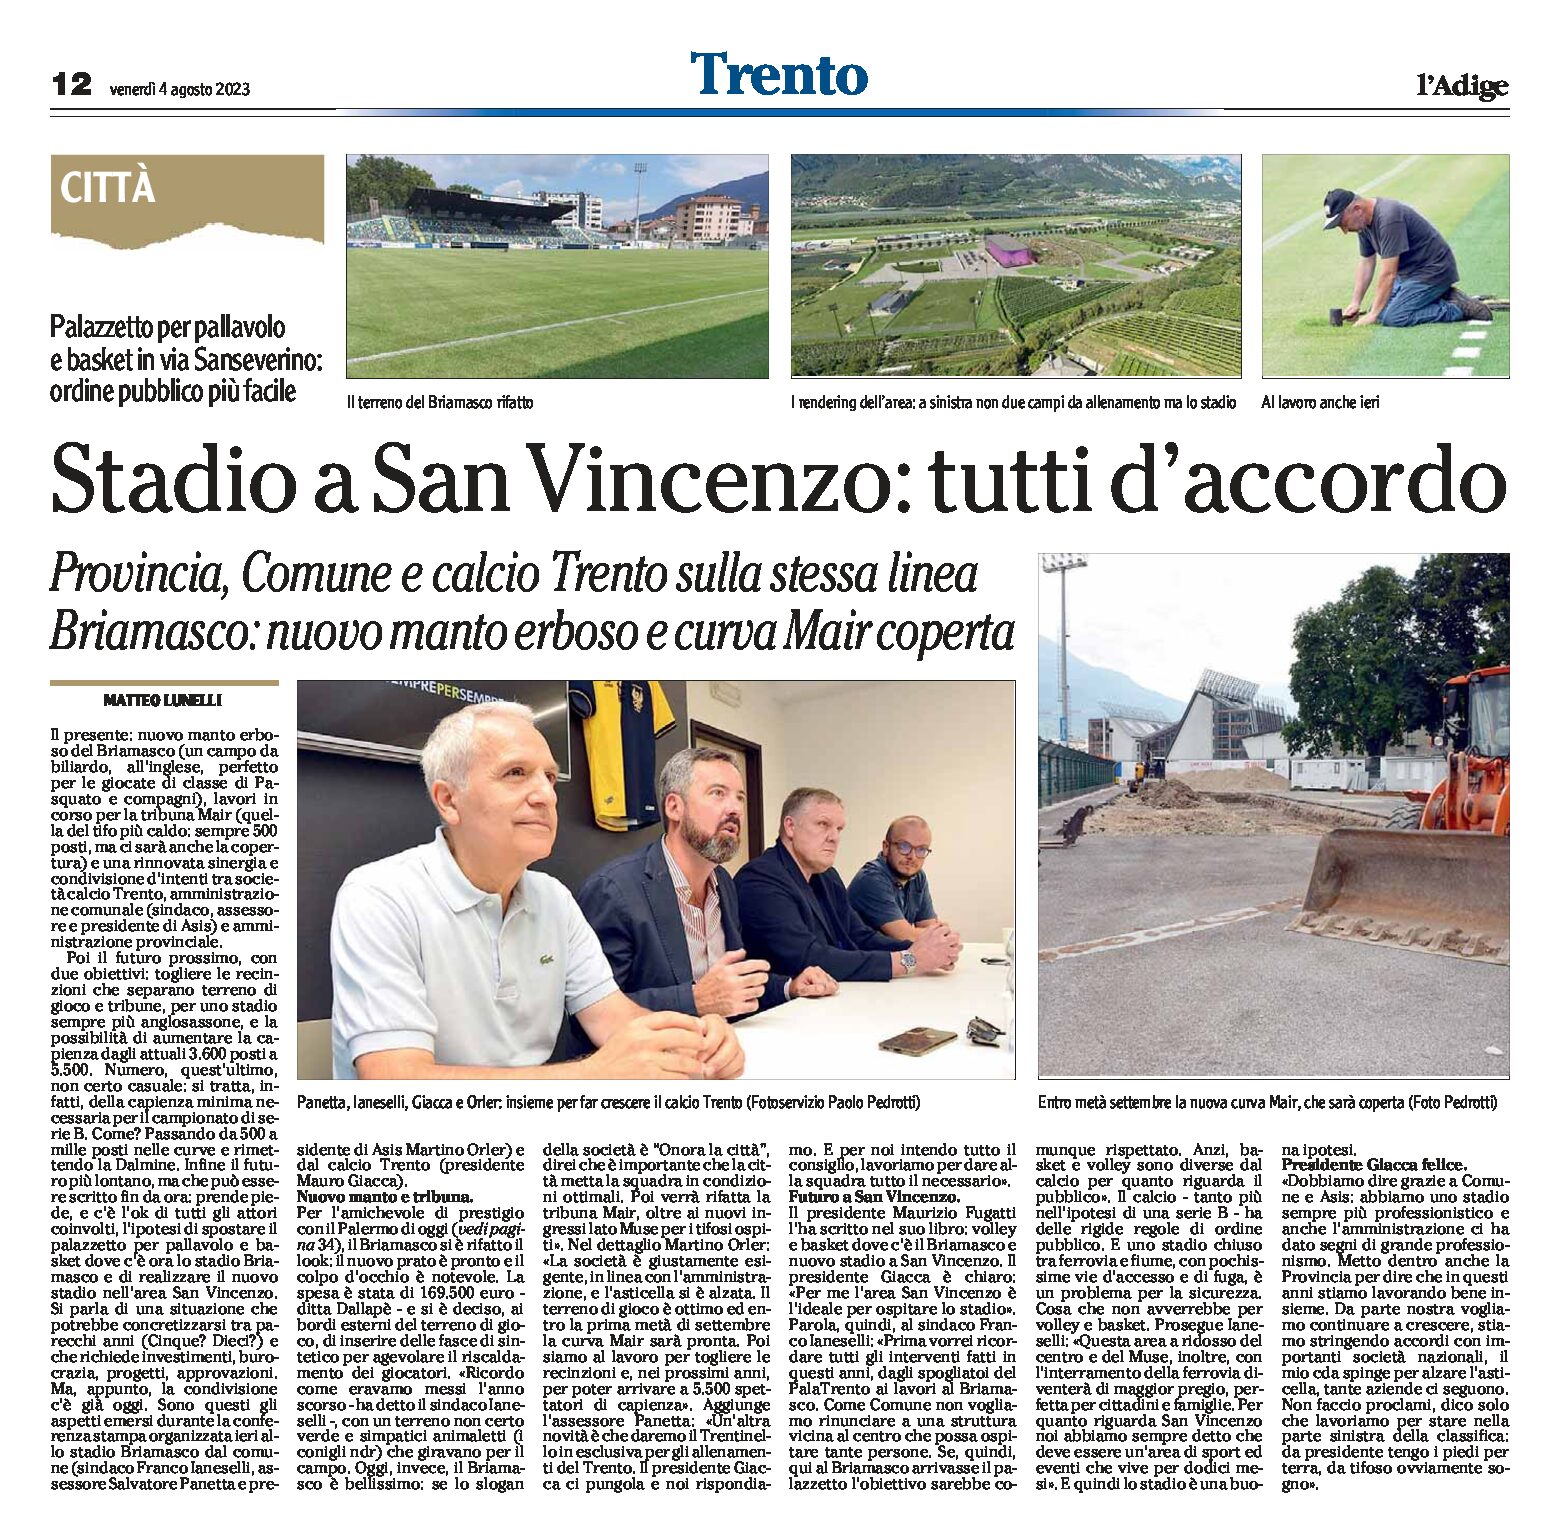 Trento: stadio a San Vincenzo, tutti d’accordo